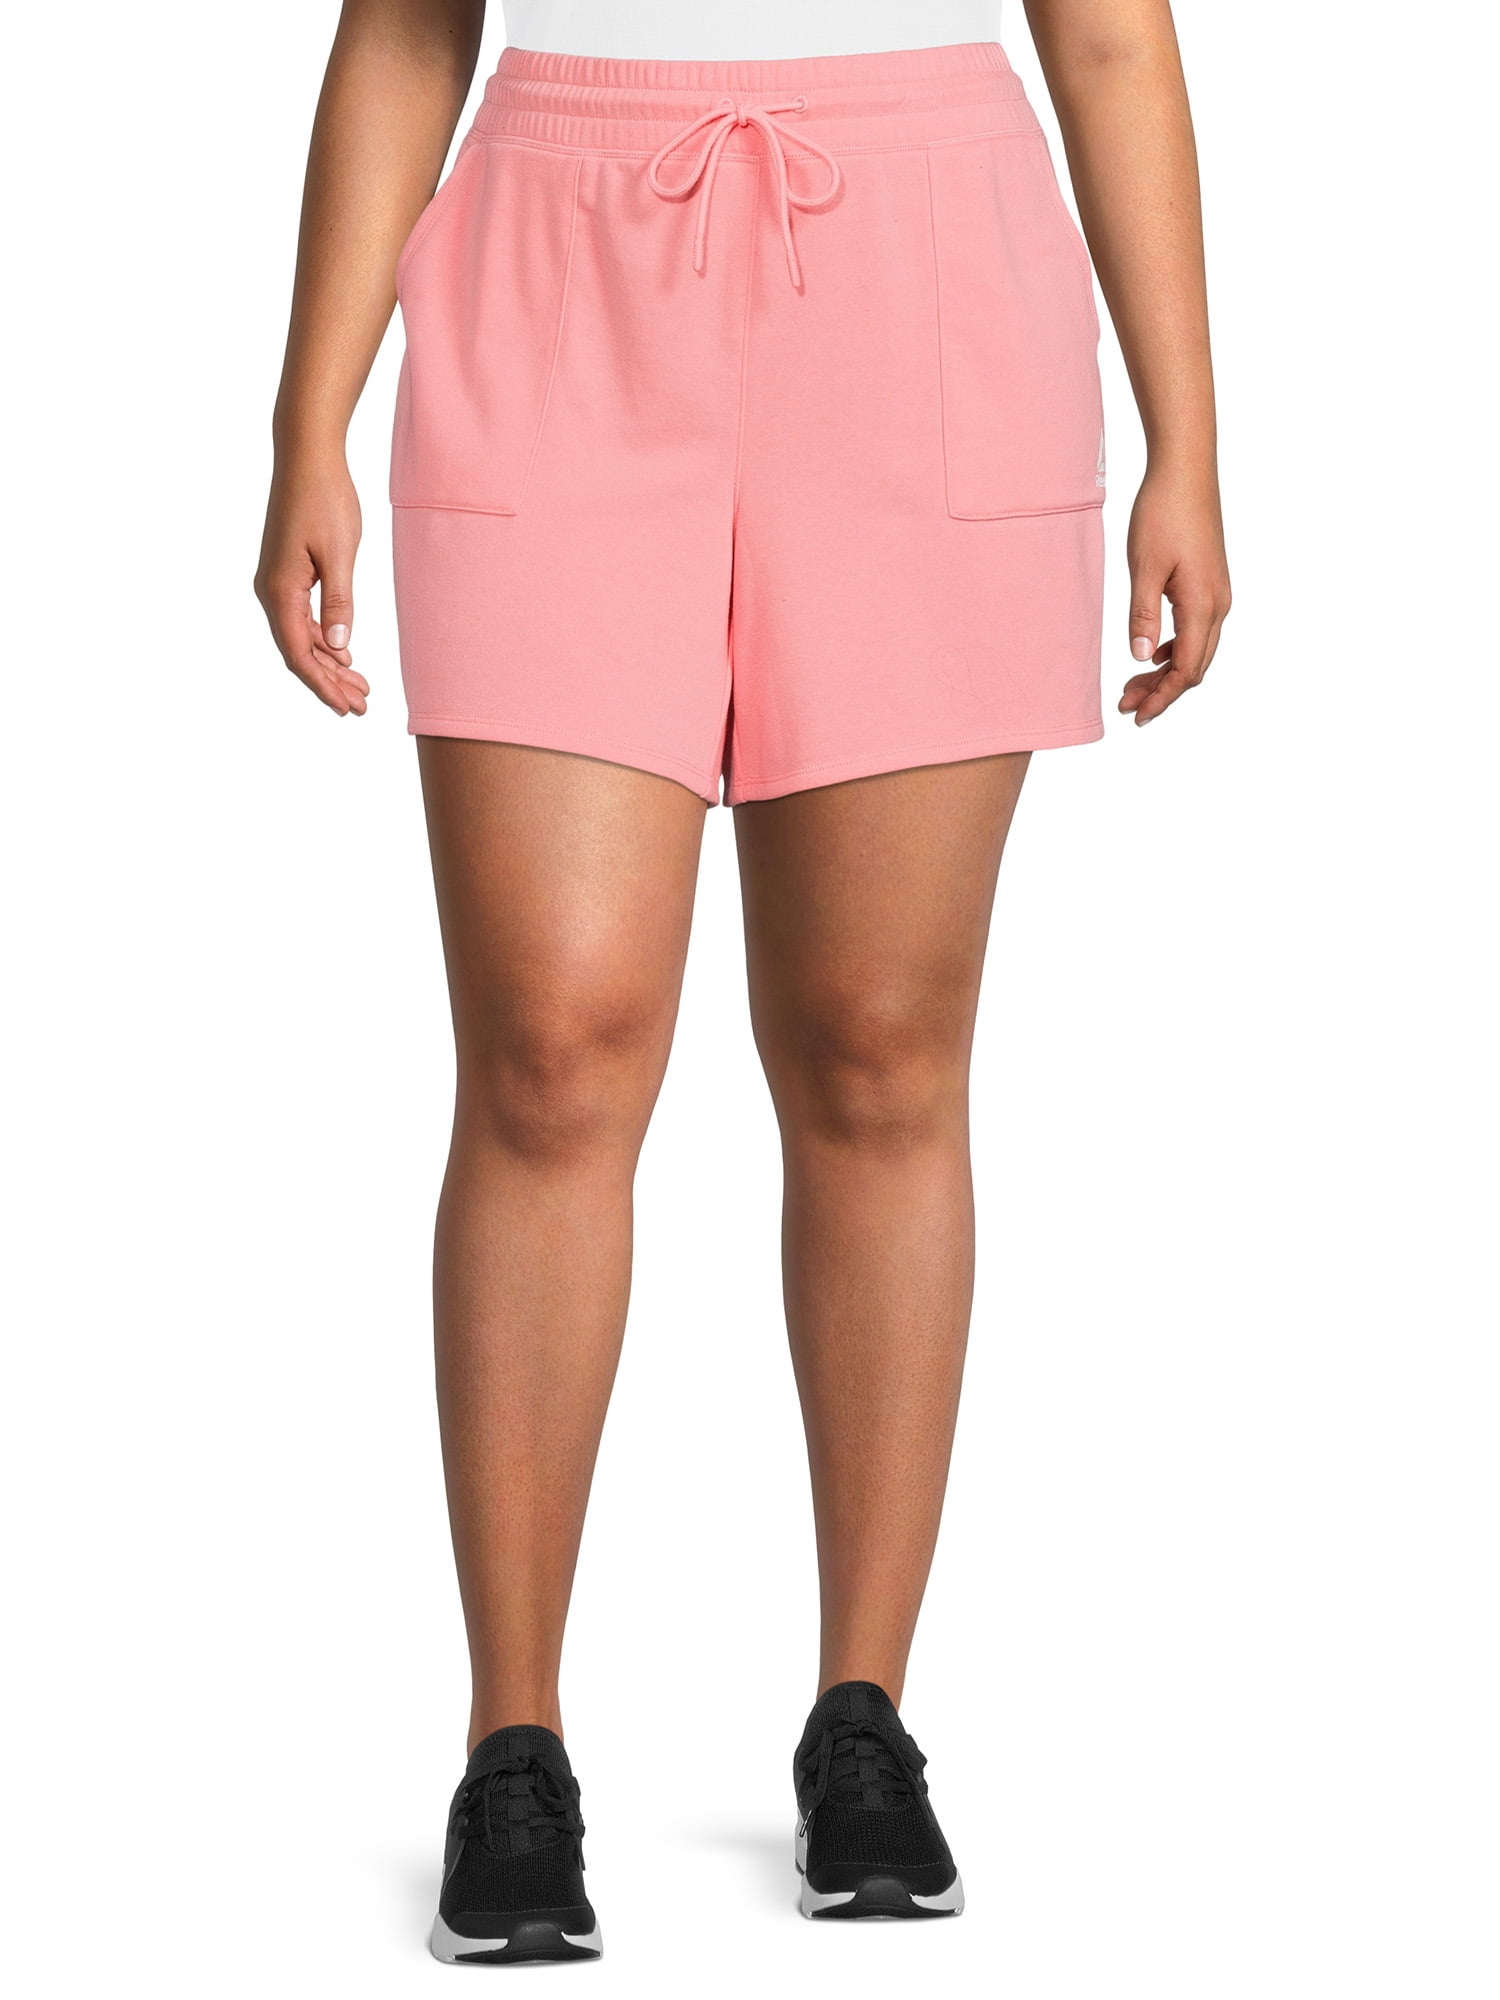 Reebok Women's Plus Size 4 Inseam Favorite Short with Side Pockets 